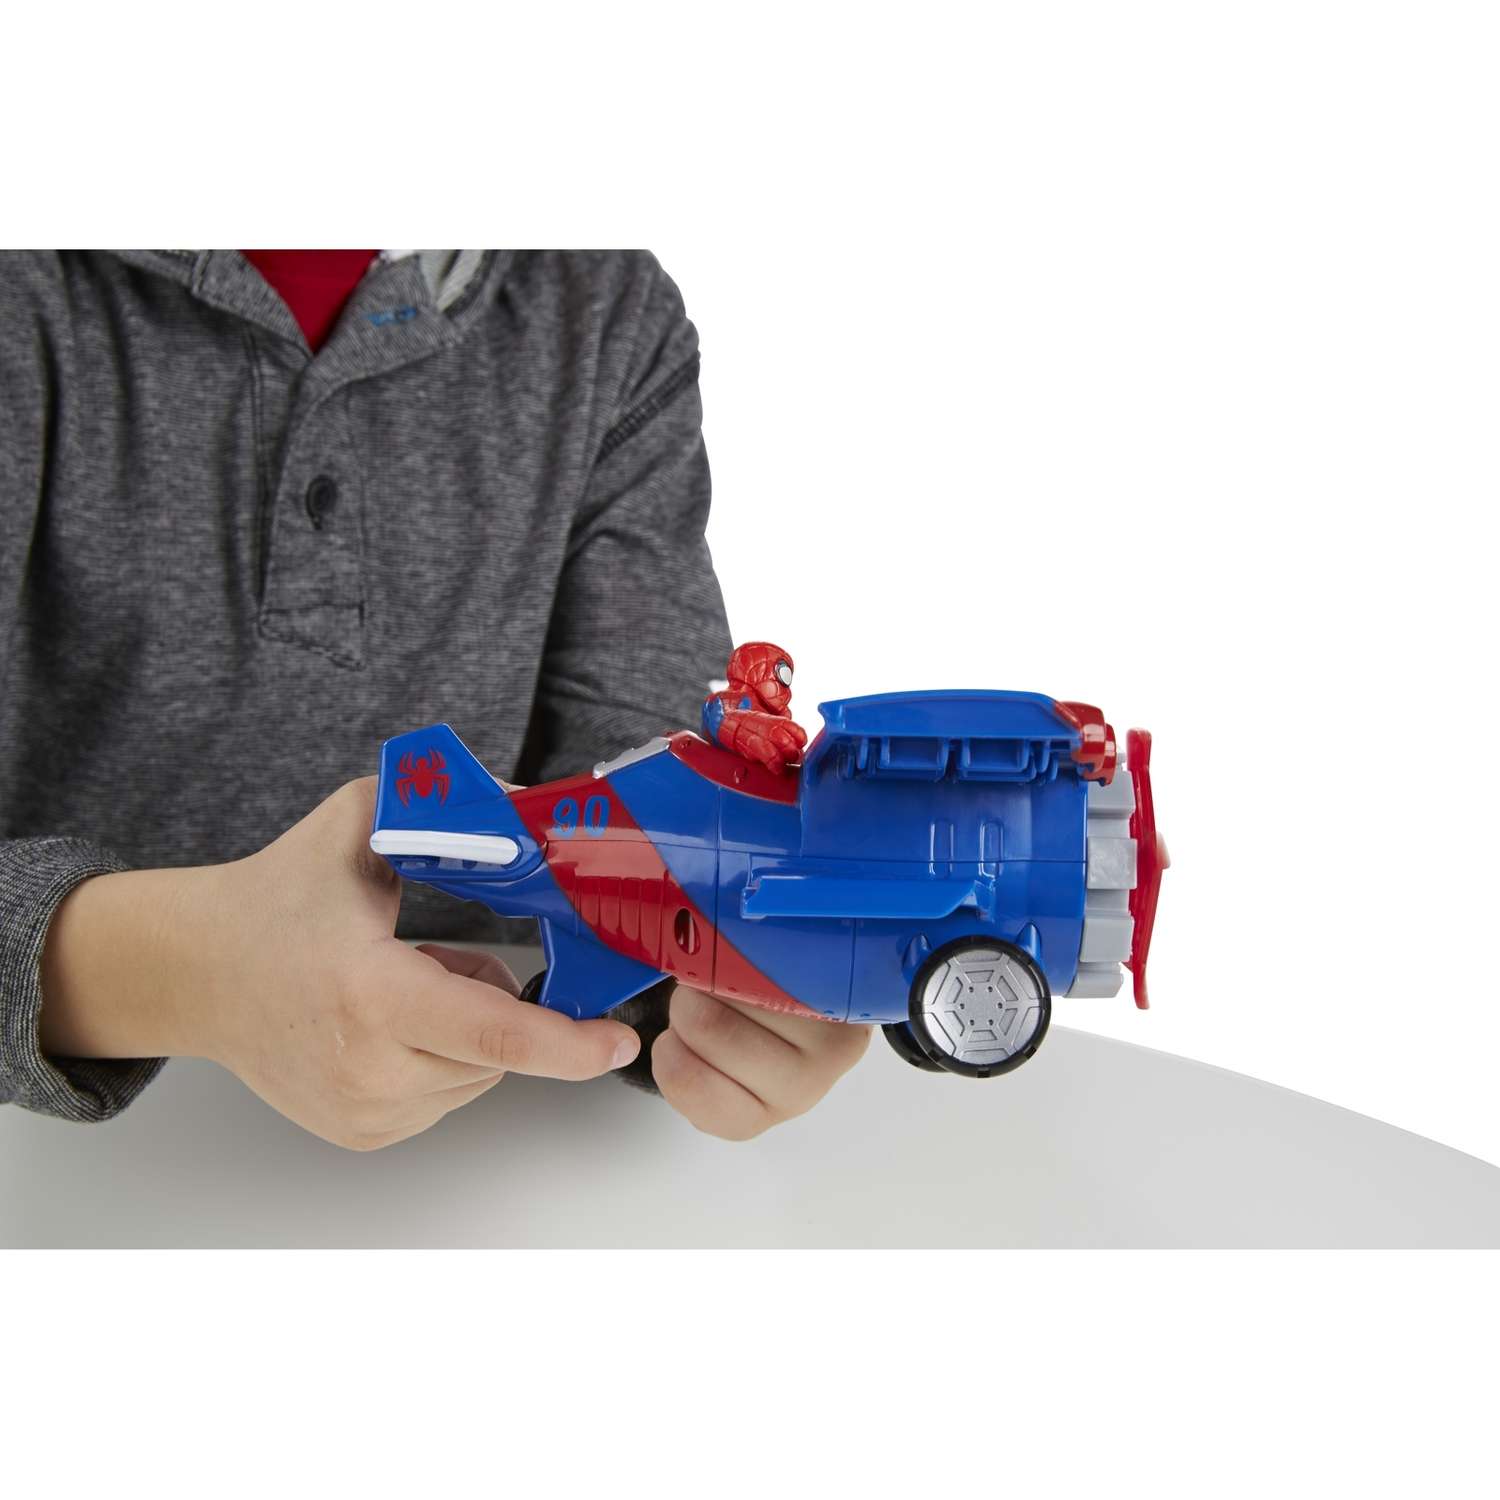 Фигурка Playskool и транспортное средство в ассортименте - фото 12